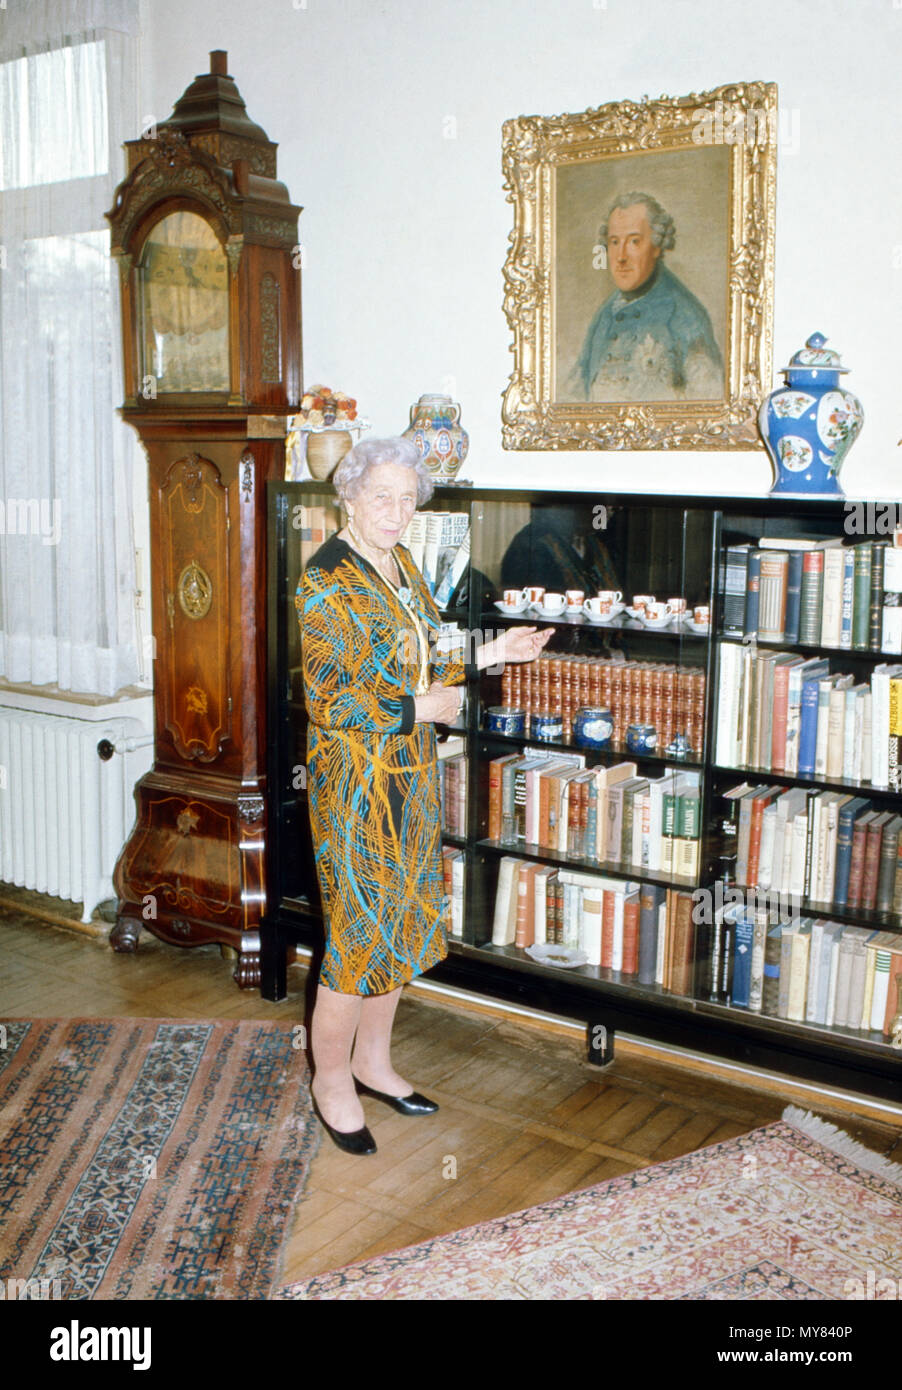 Prinzessin Viktoria Luise von Preußen, Herzogin zu Braunschweig-Lüneburg,  am Bücherschrank in ihrem Haus in Braunschweig, Deutschland 1974. Princess  Victoria Louise of Prussia, Duchess of Brunswick Lueneburg, at the  bookshelf in her house